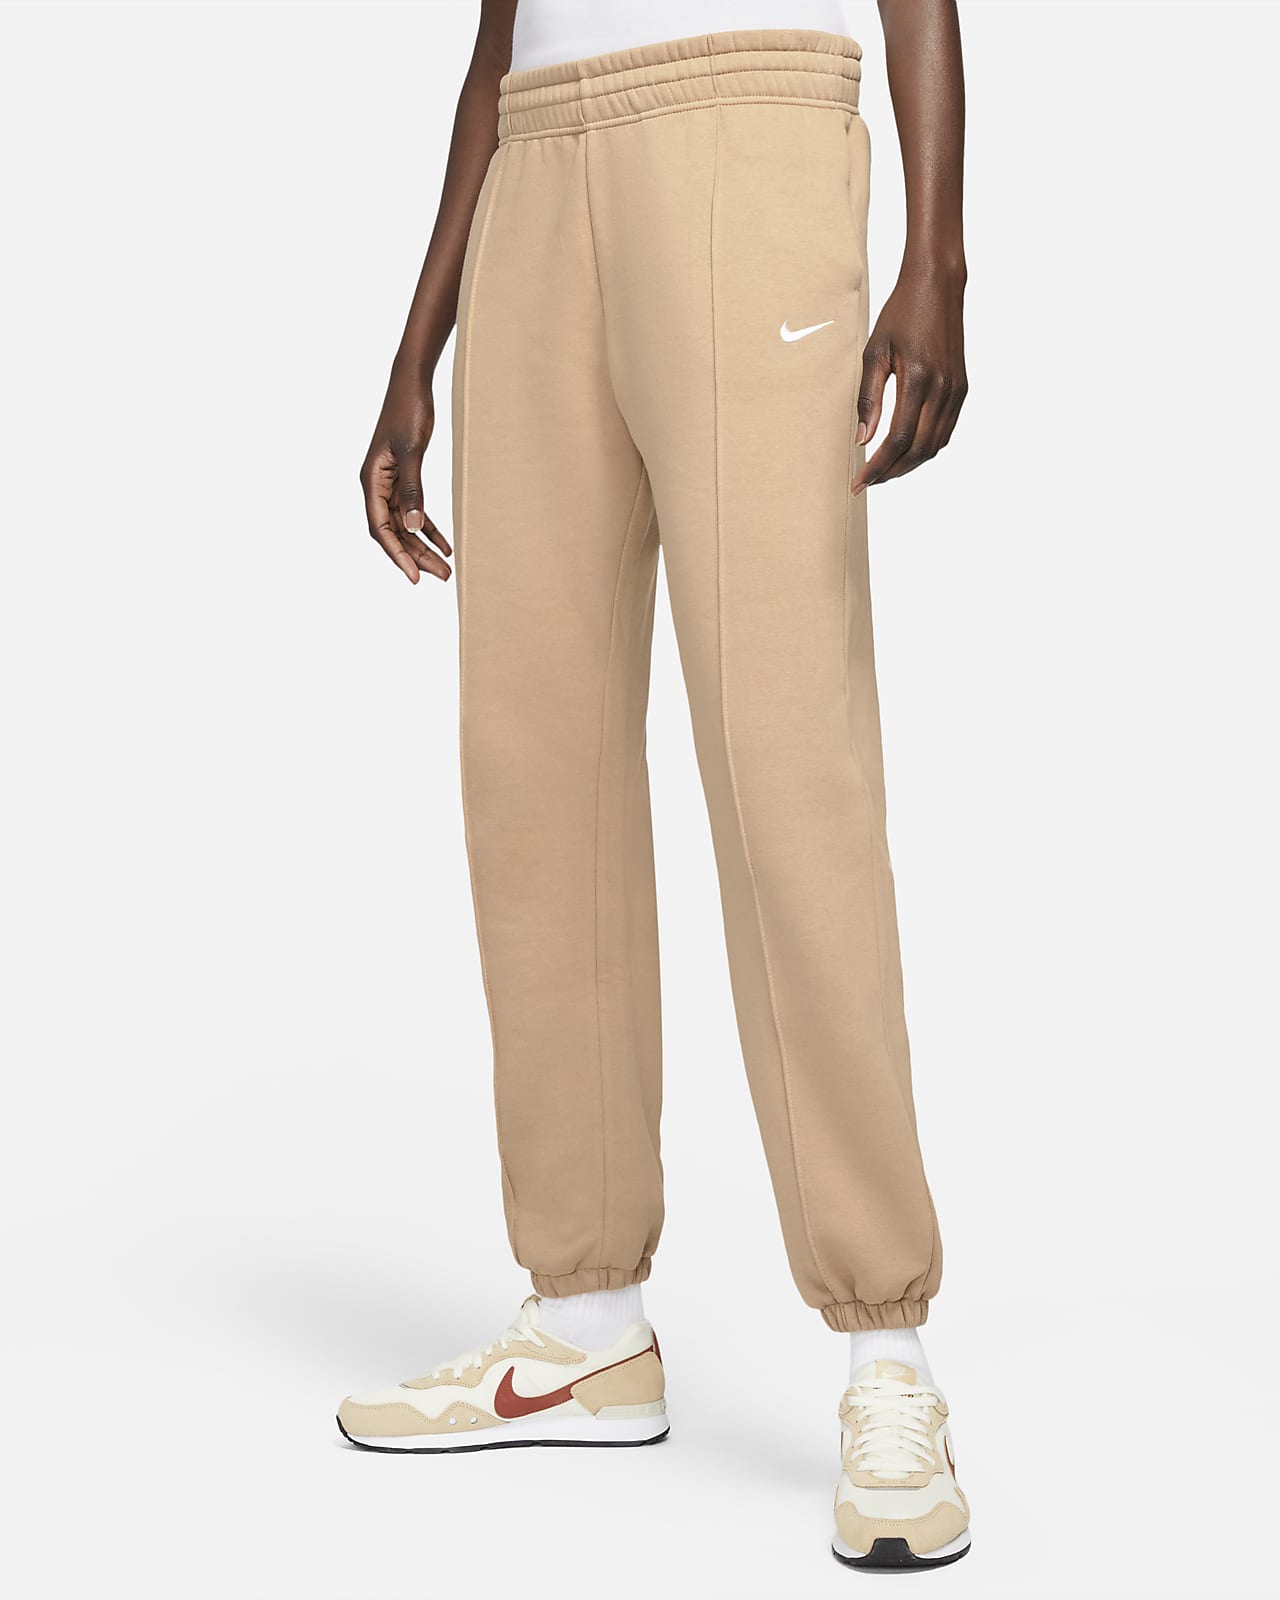 Nike Sportswear Essential Collection Women's Fleece Pants